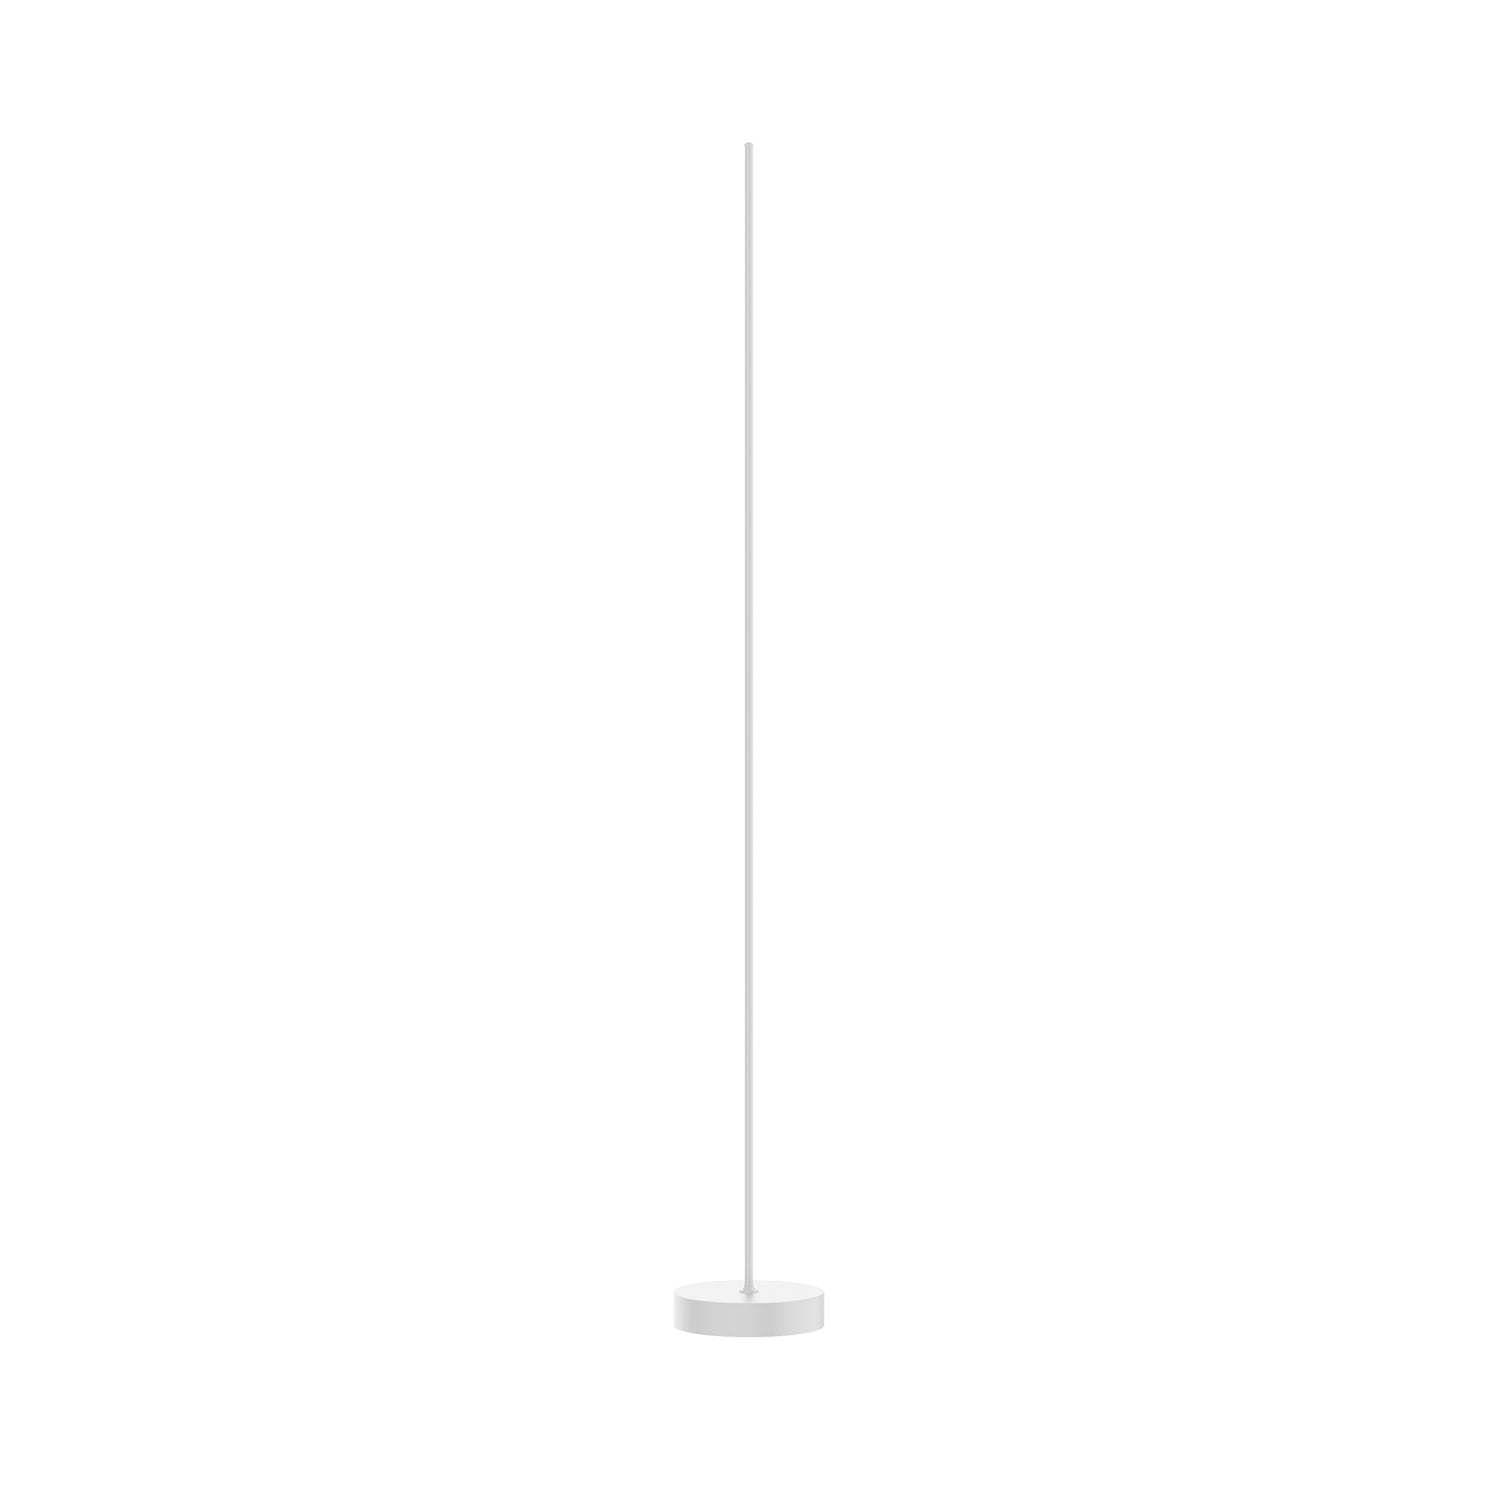 Kuzco Lighting FL46748-WH Reeds Lamps White